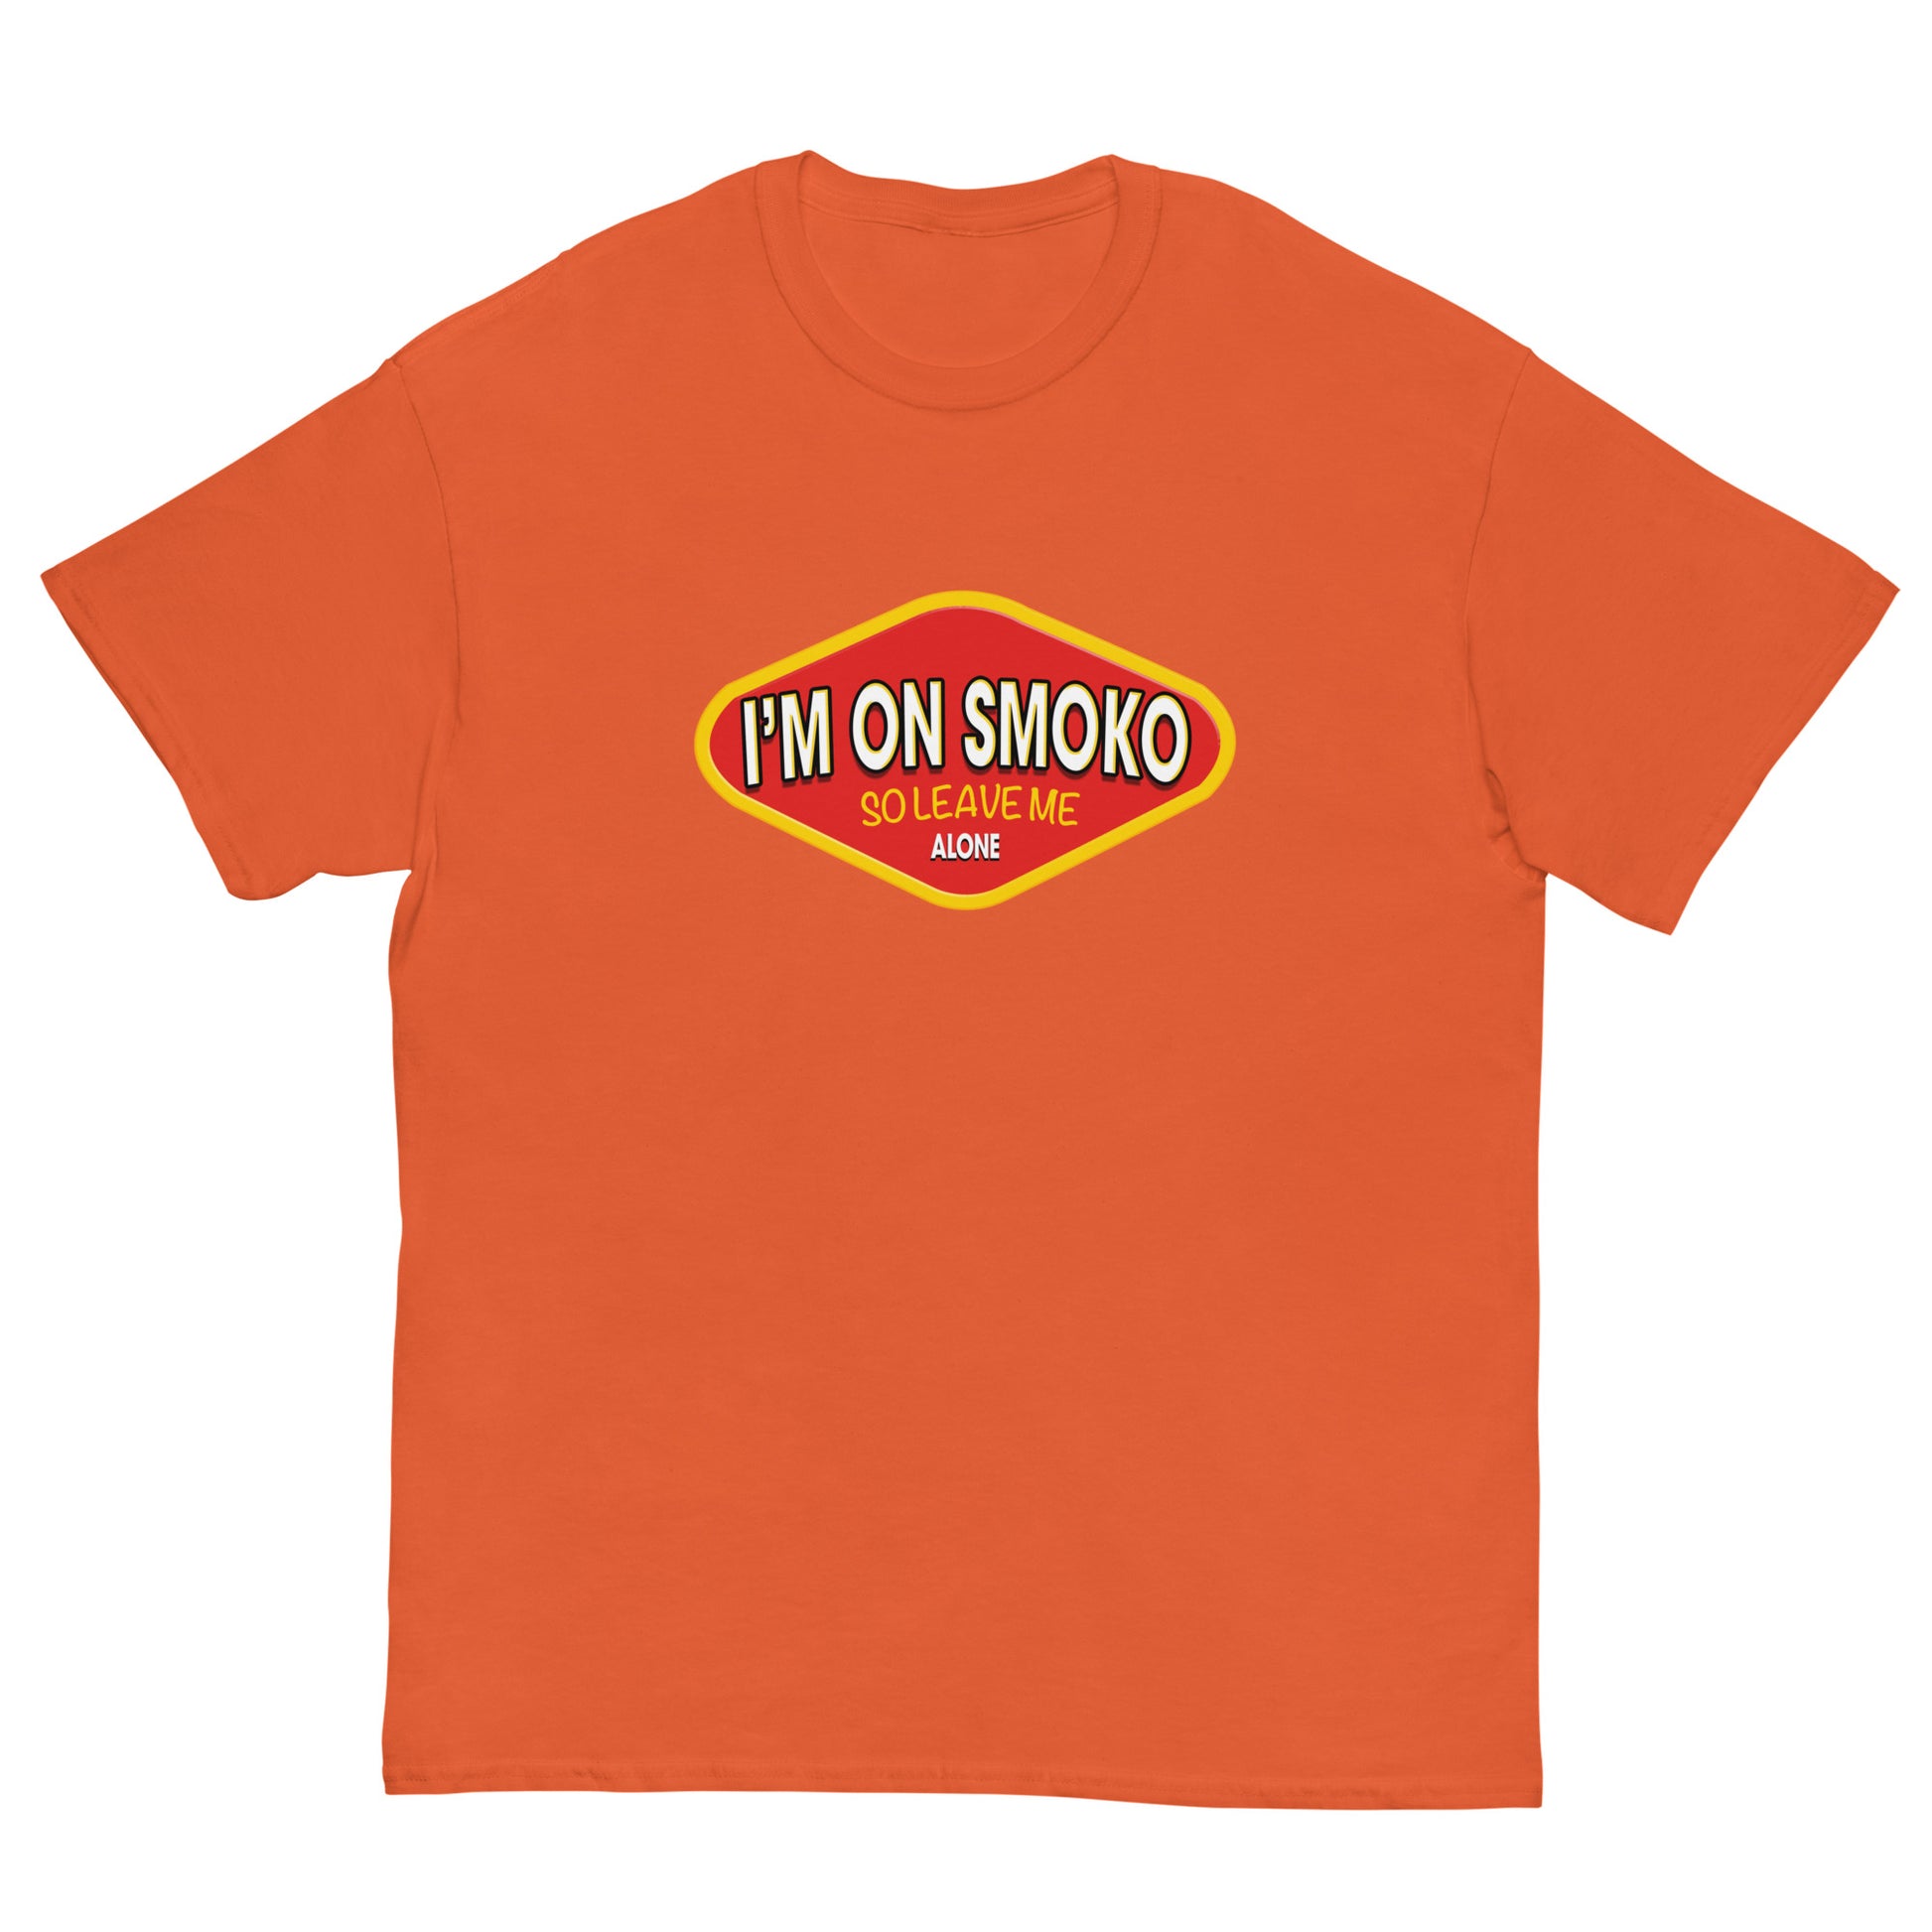 Im on smoko vegemite screen printed t-shirt